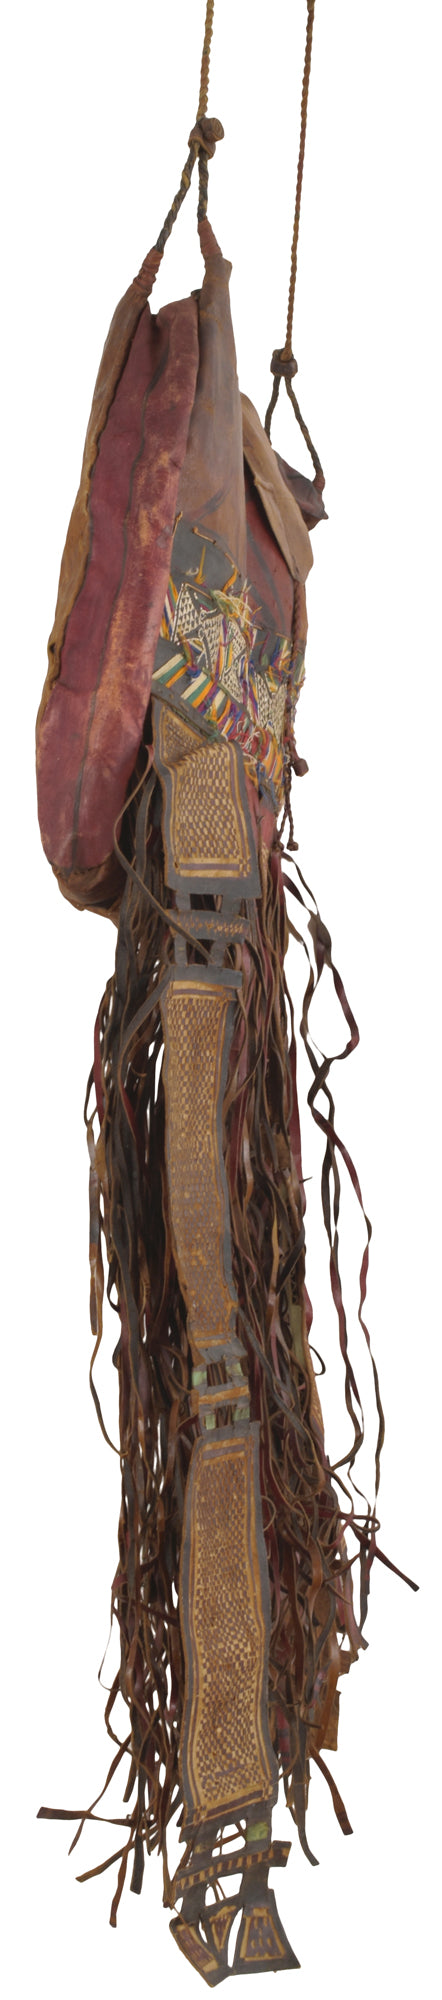 Bolso de caballo camello de cuero tuareg africano antiguo de Níger Peul Fulani Sahara art - Tribalgh